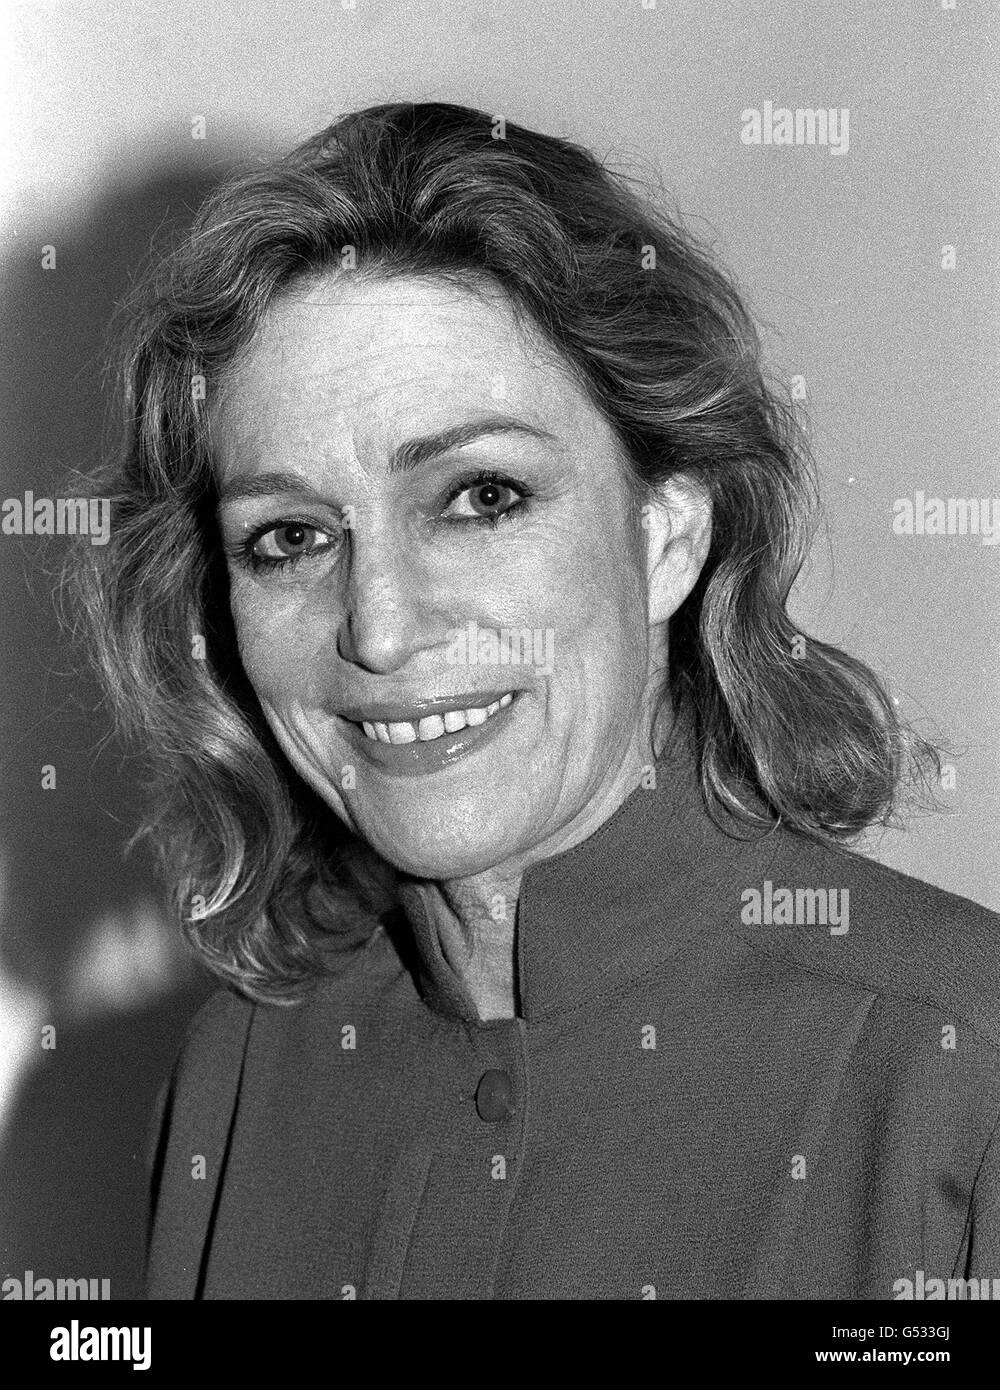 Un ritratto dell'autore Shirley Conran, che ha scritto libri come Superwoman e Lace, nel 1984. Foto Stock